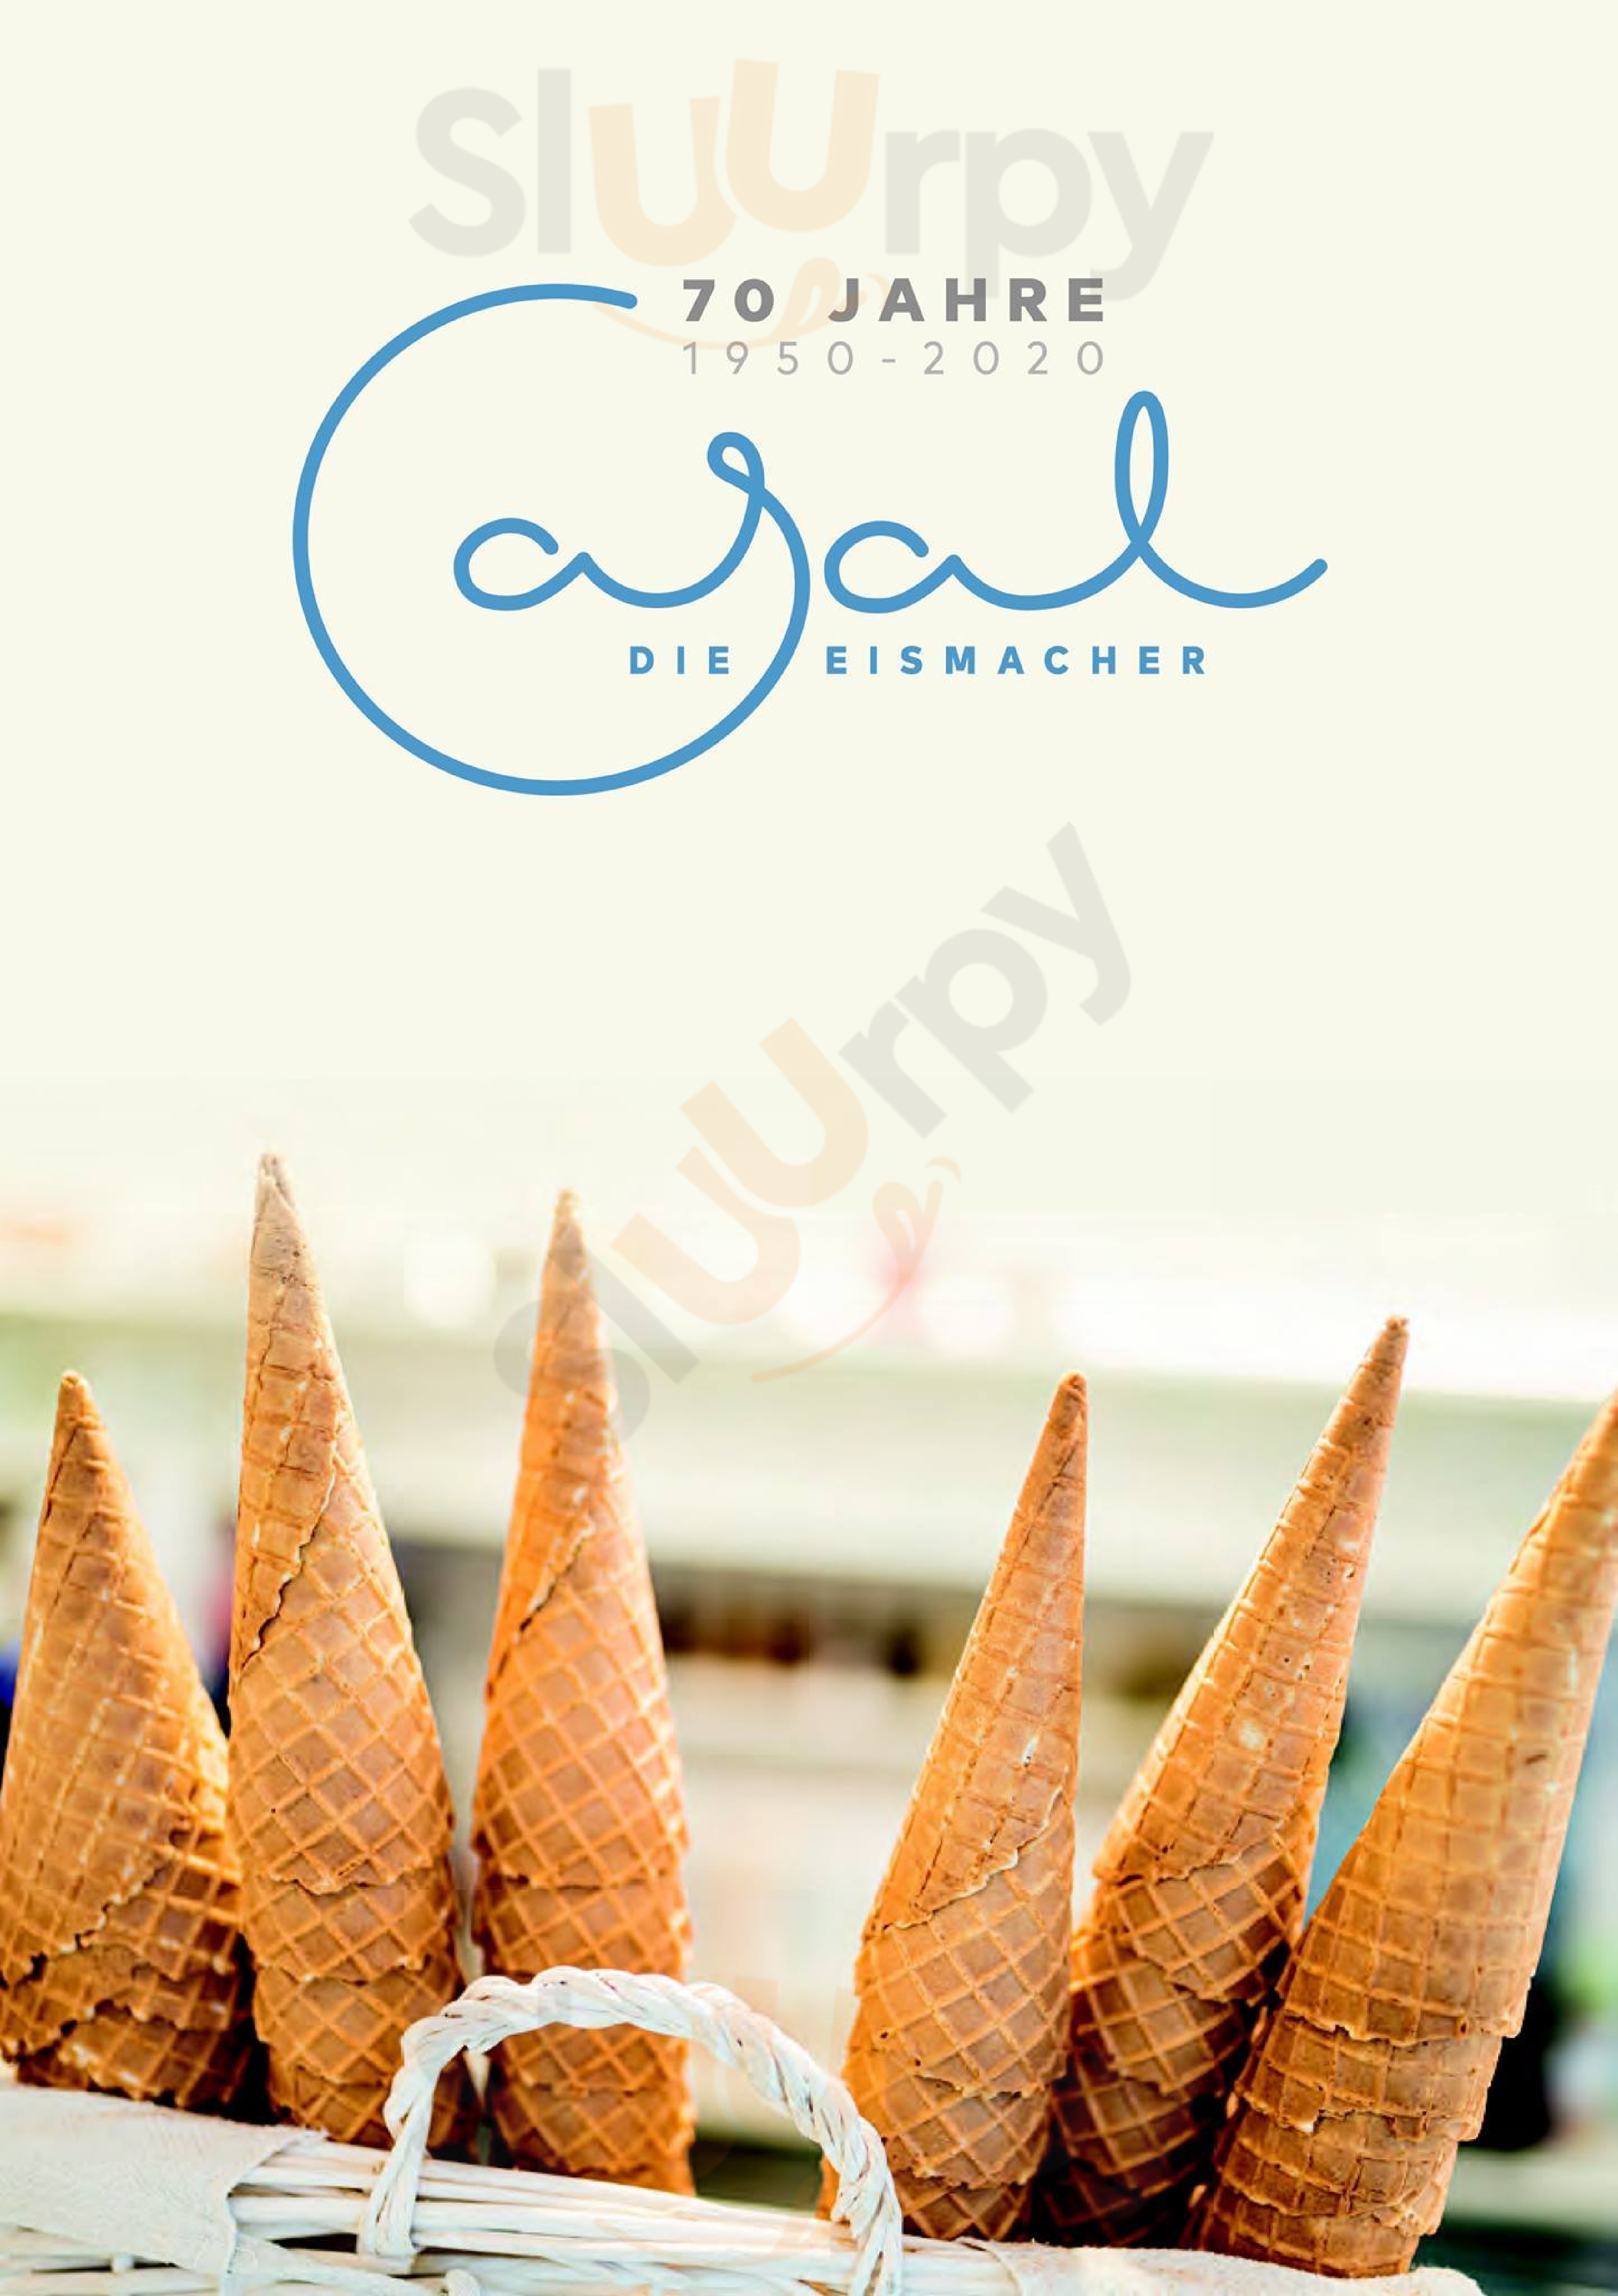 Eis Casal - Die Eismacher Essen Menu - 1